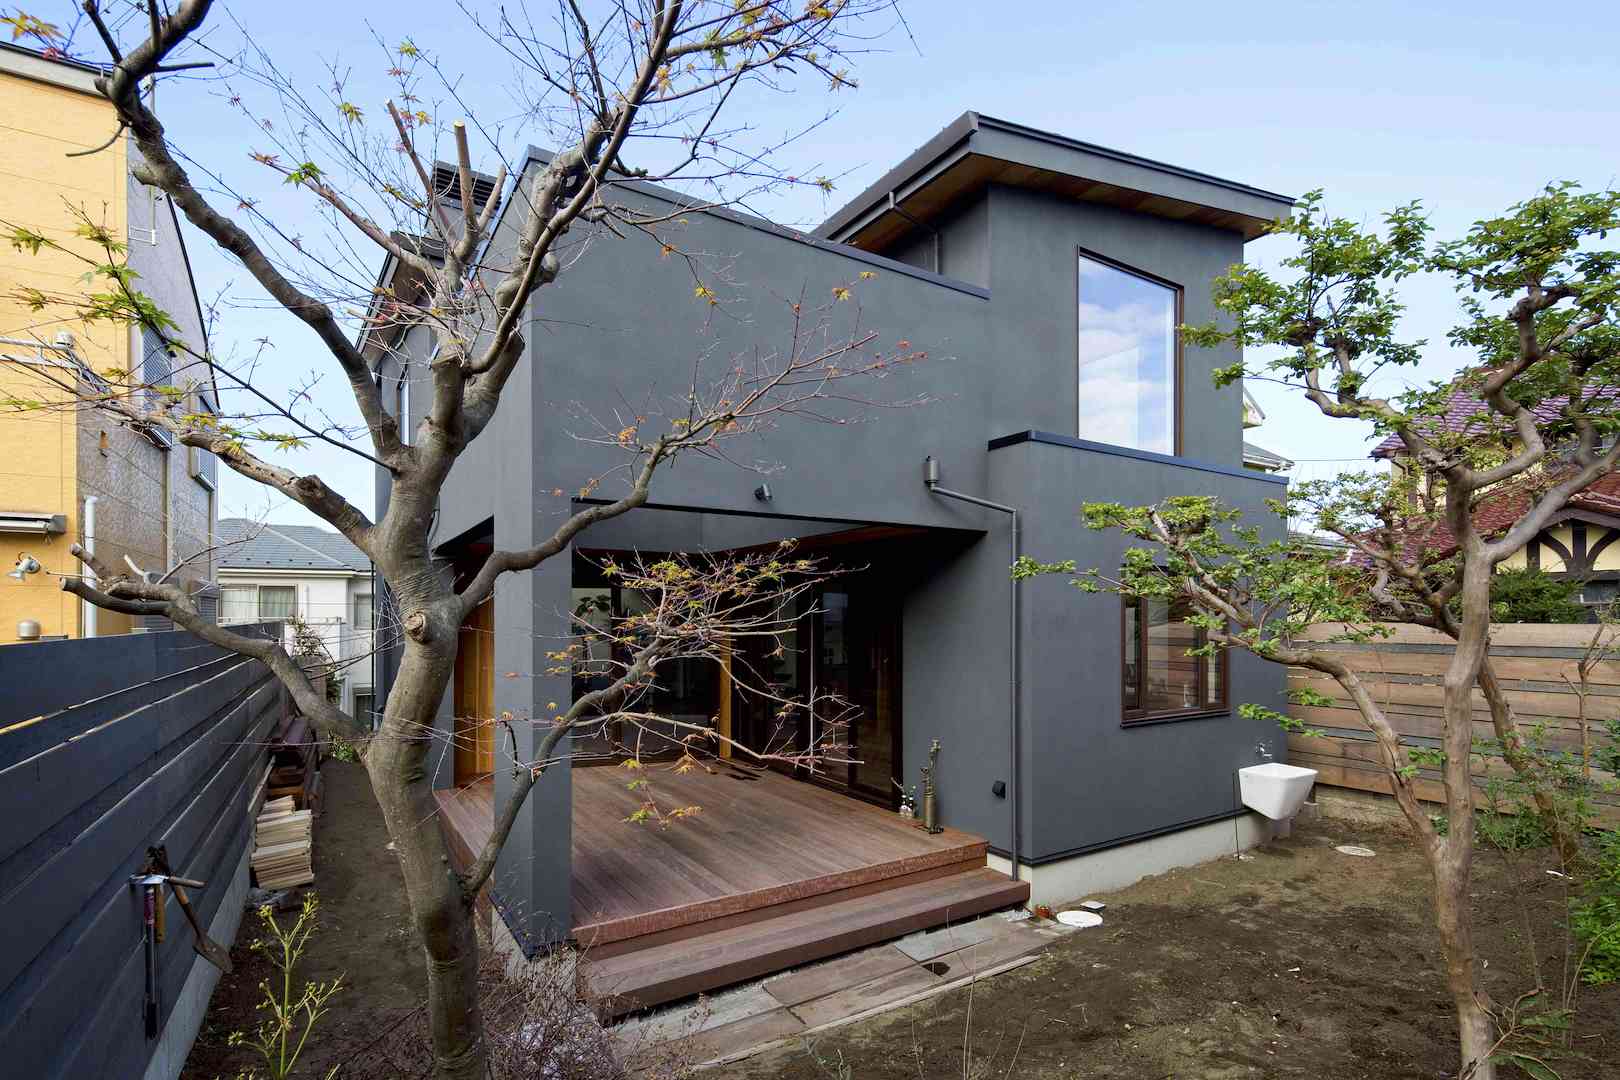 自然の中で暮らしているような家づくり 施工された家の特徴 外観 神奈川での注文住宅は山下建設 イメージをカタチにする技術力で思いっきりmystyleの家を提案